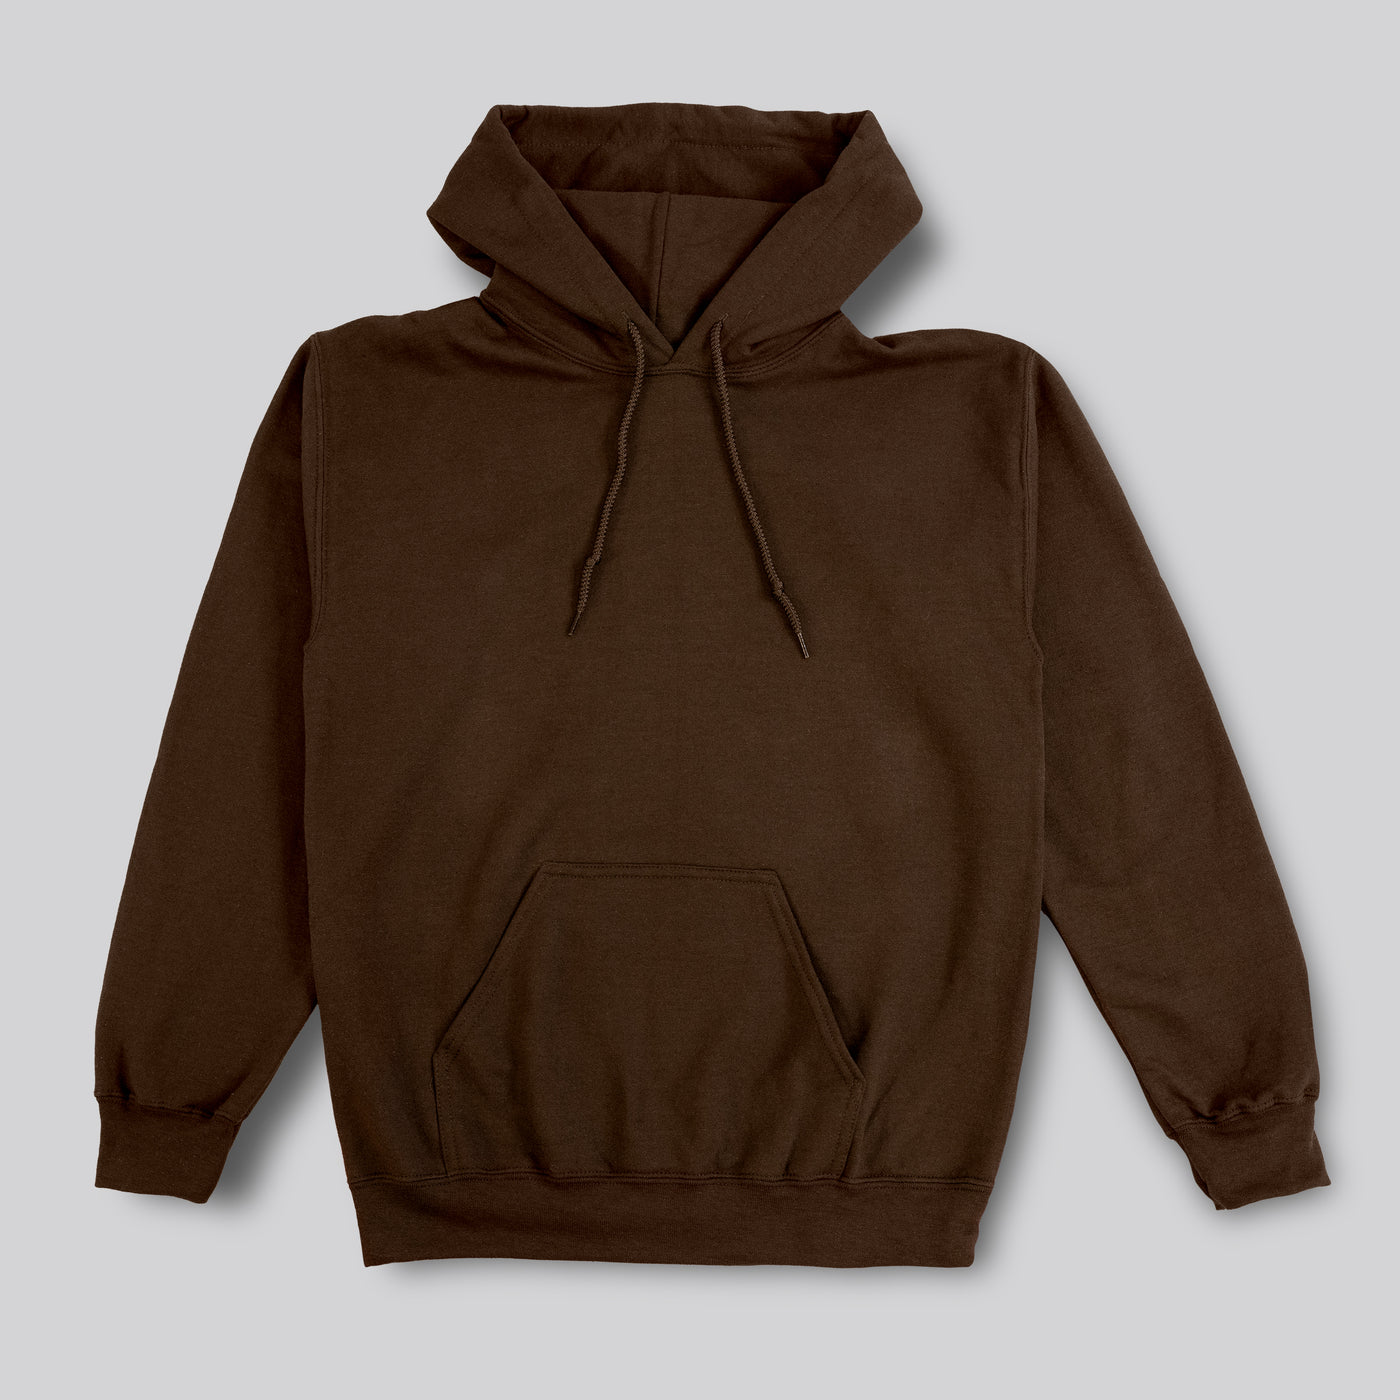 Brown hoodie option